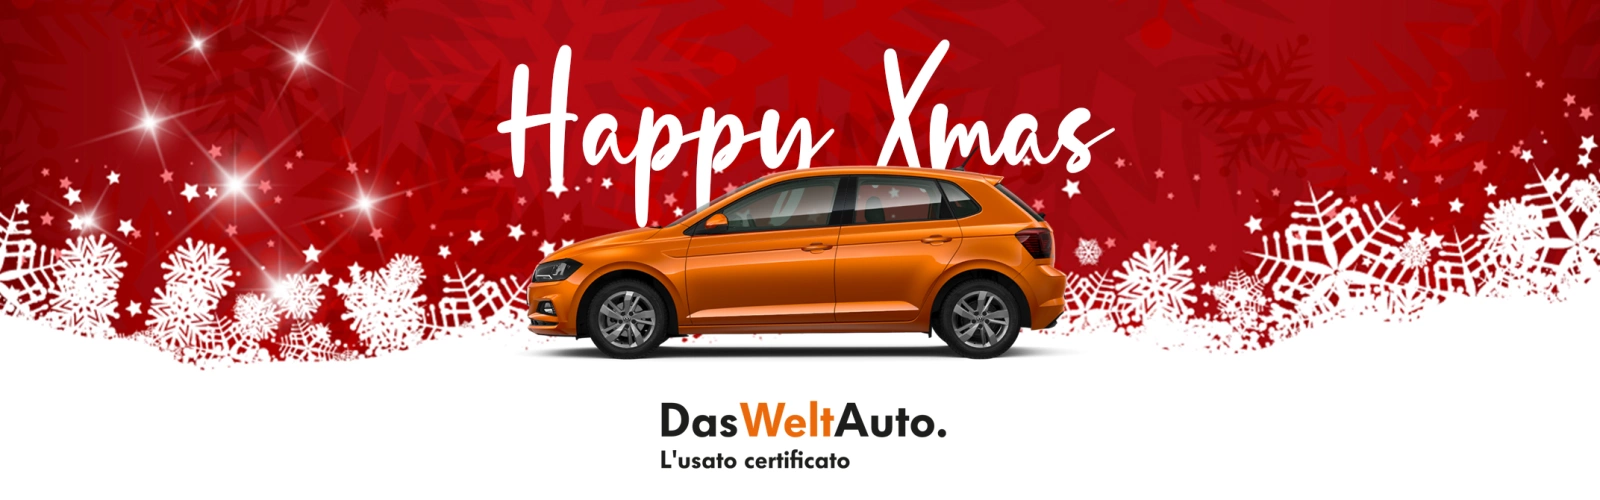 Happy Xmas | Promo Volkswagen Das WeltAuto